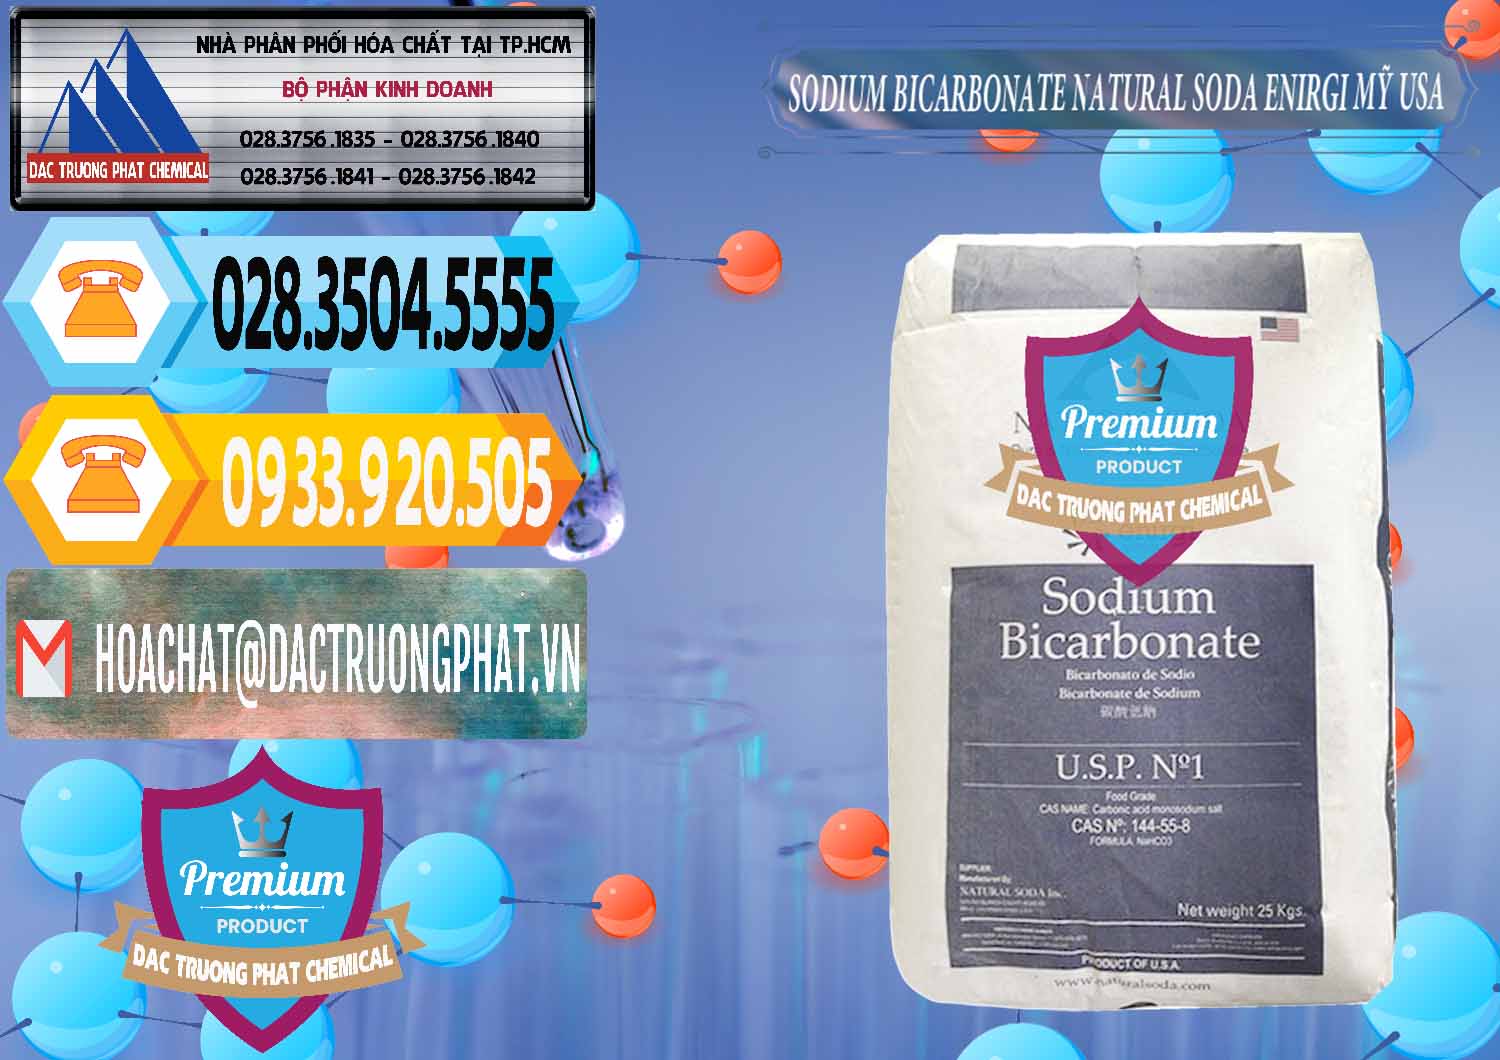 Đơn vị cung ứng & bán Sodium Bicarbonate – Bicar NaHCO3 Food Grade Natural Soda Enirgi Mỹ USA - 0257 - Công ty phân phối ( cung cấp ) hóa chất tại TP.HCM - hoachattayrua.net